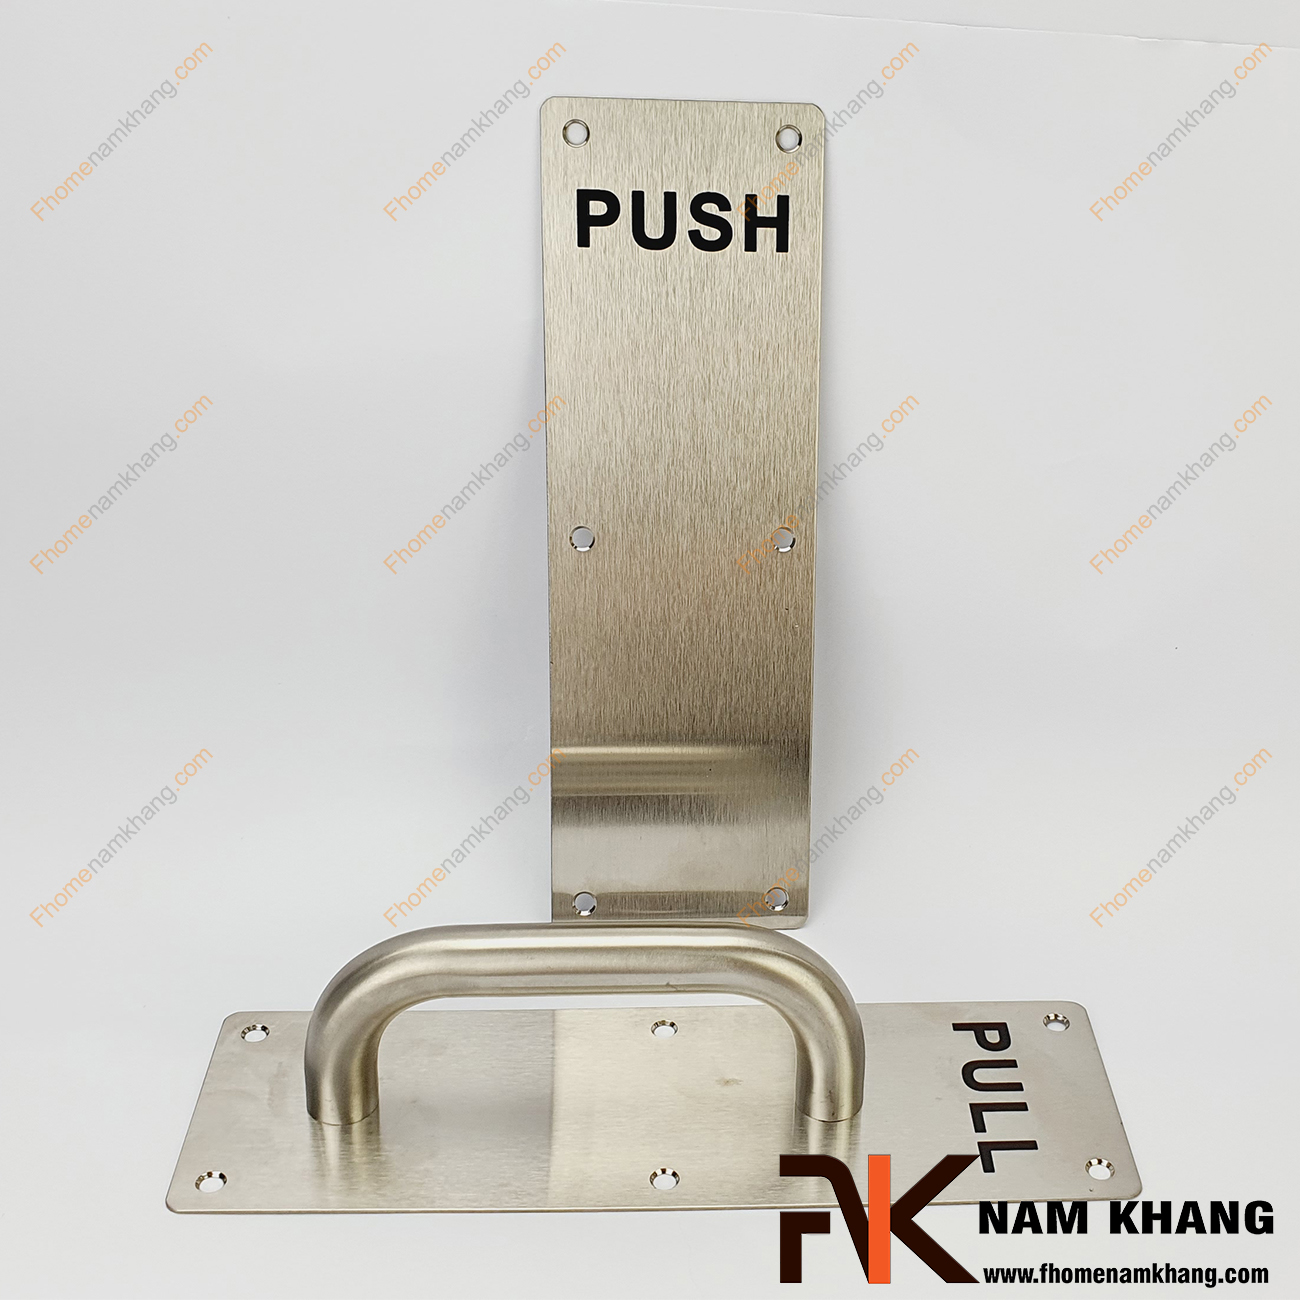 Tay nắm cửa PULL PUSH NK630-INOX là dạng tay nắm chuyên dùng cho các dạng cửa đóng mở 1 chiều hoặc 2 chiều. Tay PULL dùng cho chiều kéo và hoặc kéo ra, tay PUSH dùng cho chiều đẩy. Bộ tay nắm này rất tiện lợi, cực kì dễ lắm đặt và sử dụng đơn giản.